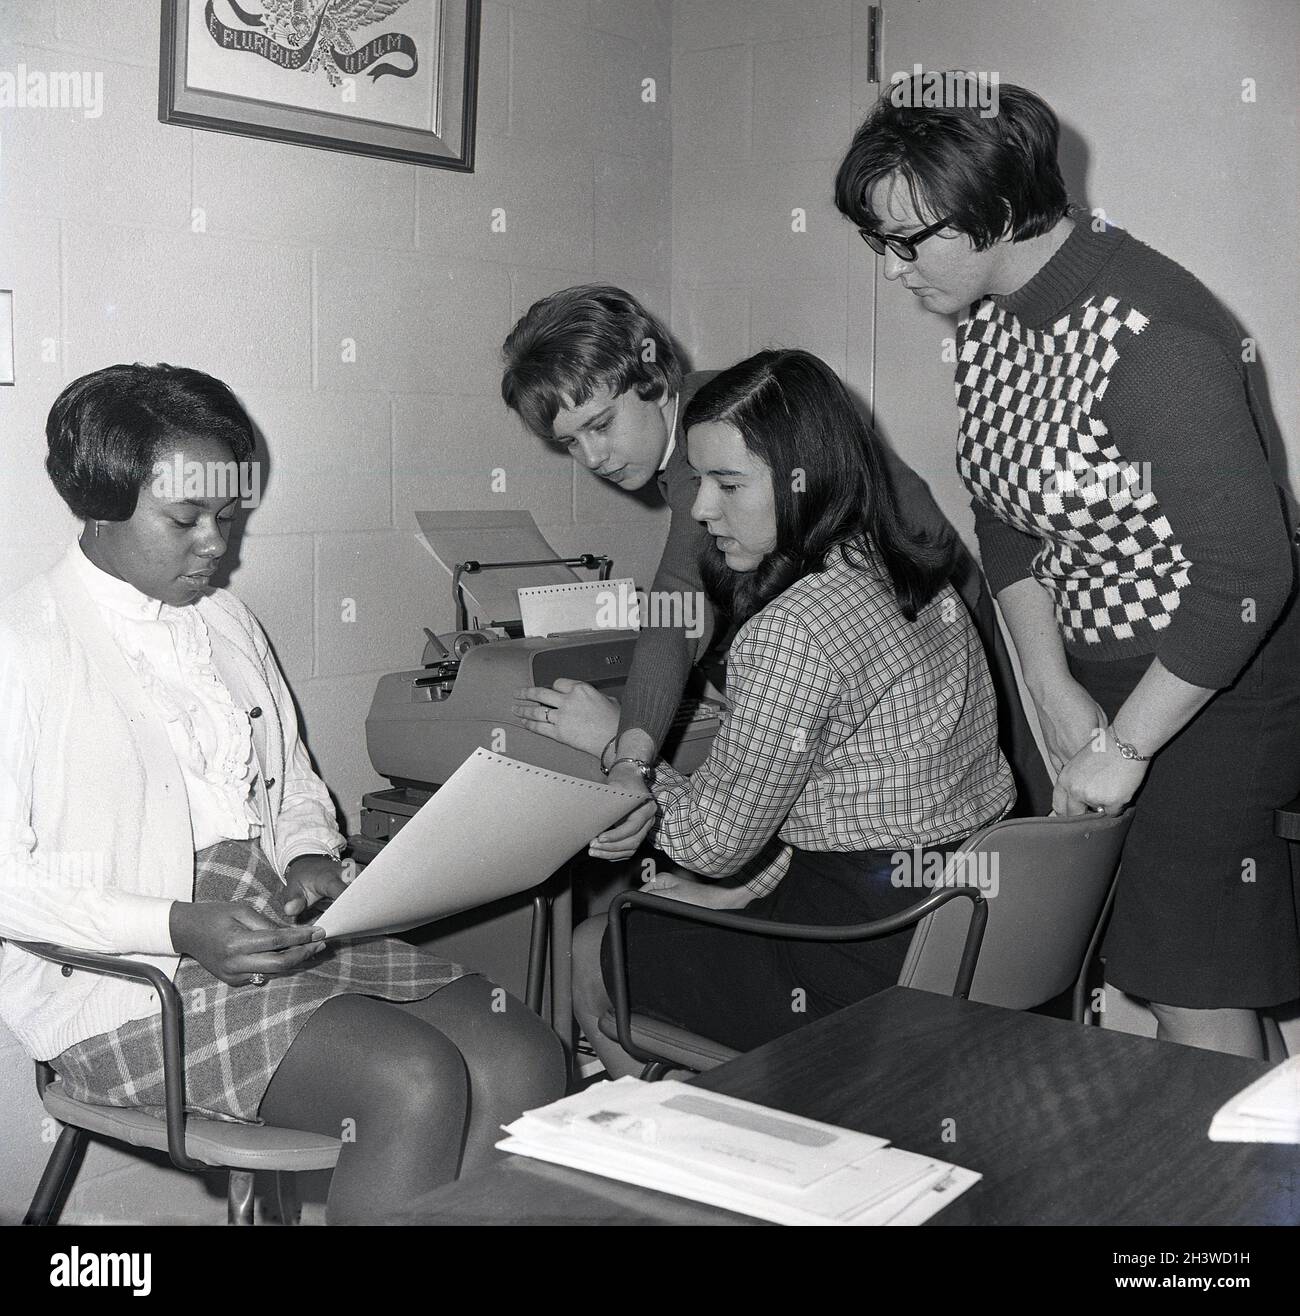 1968, historische, vier College-Mädchen in einem Zimmer, wobei ein Mädchen mit Blick auf einen Computerausdruck sitzt und ein anderes mit einem IBM-Textverarbeitungsprogramm am Schreibtisch sitzt, Virginia, USA. Stockfoto